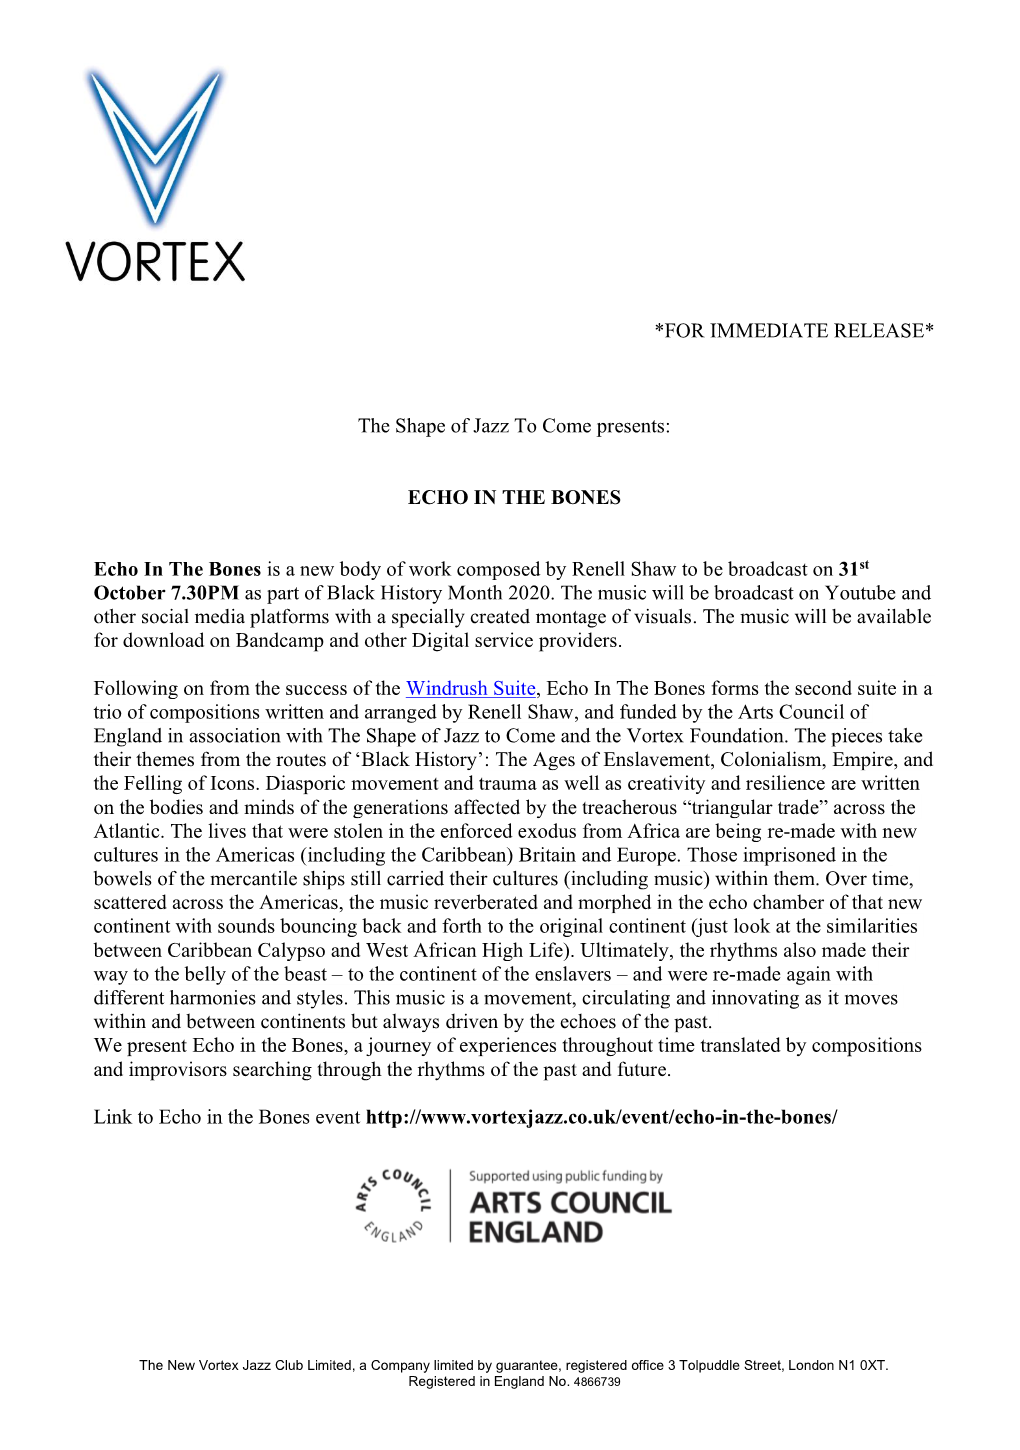 Vortex Letter